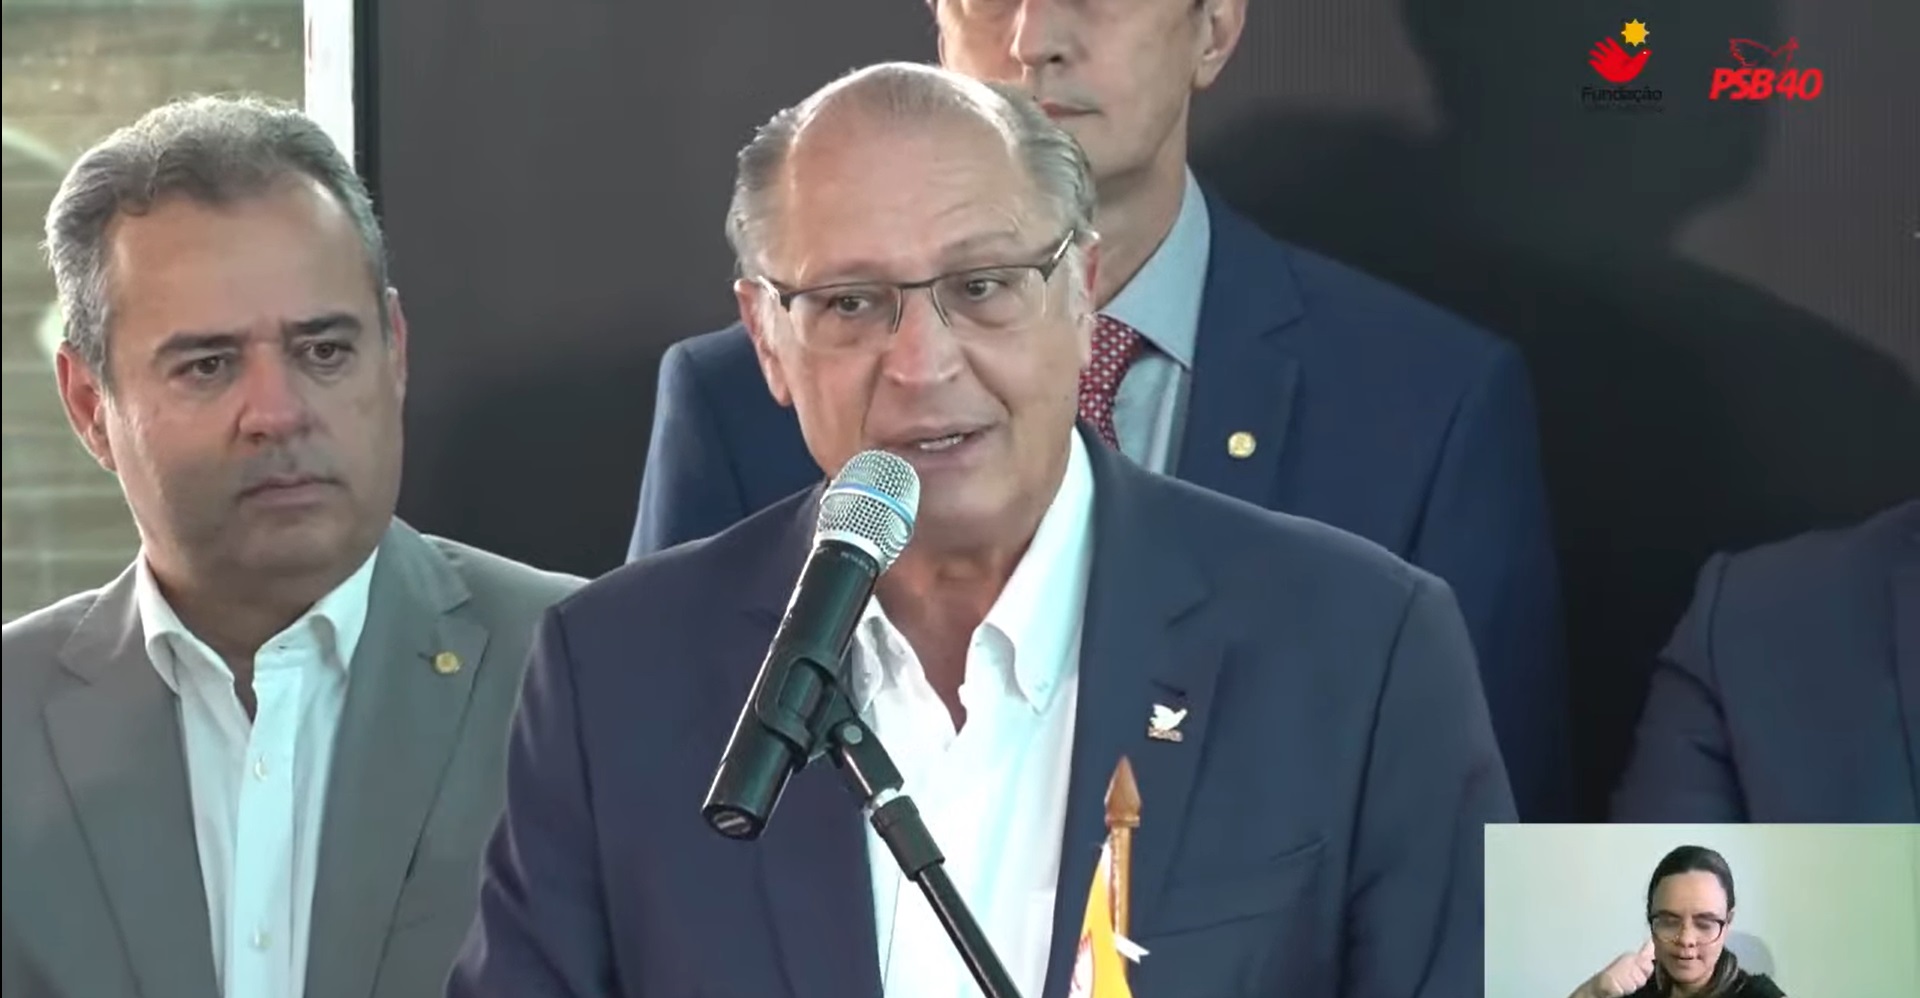 Provável candidato a vice-presidente na chapa com Lula (PT), o ex-governador Geraldo Alckmin assina ficha de filiação ao PSB. Reprodução: Youtube